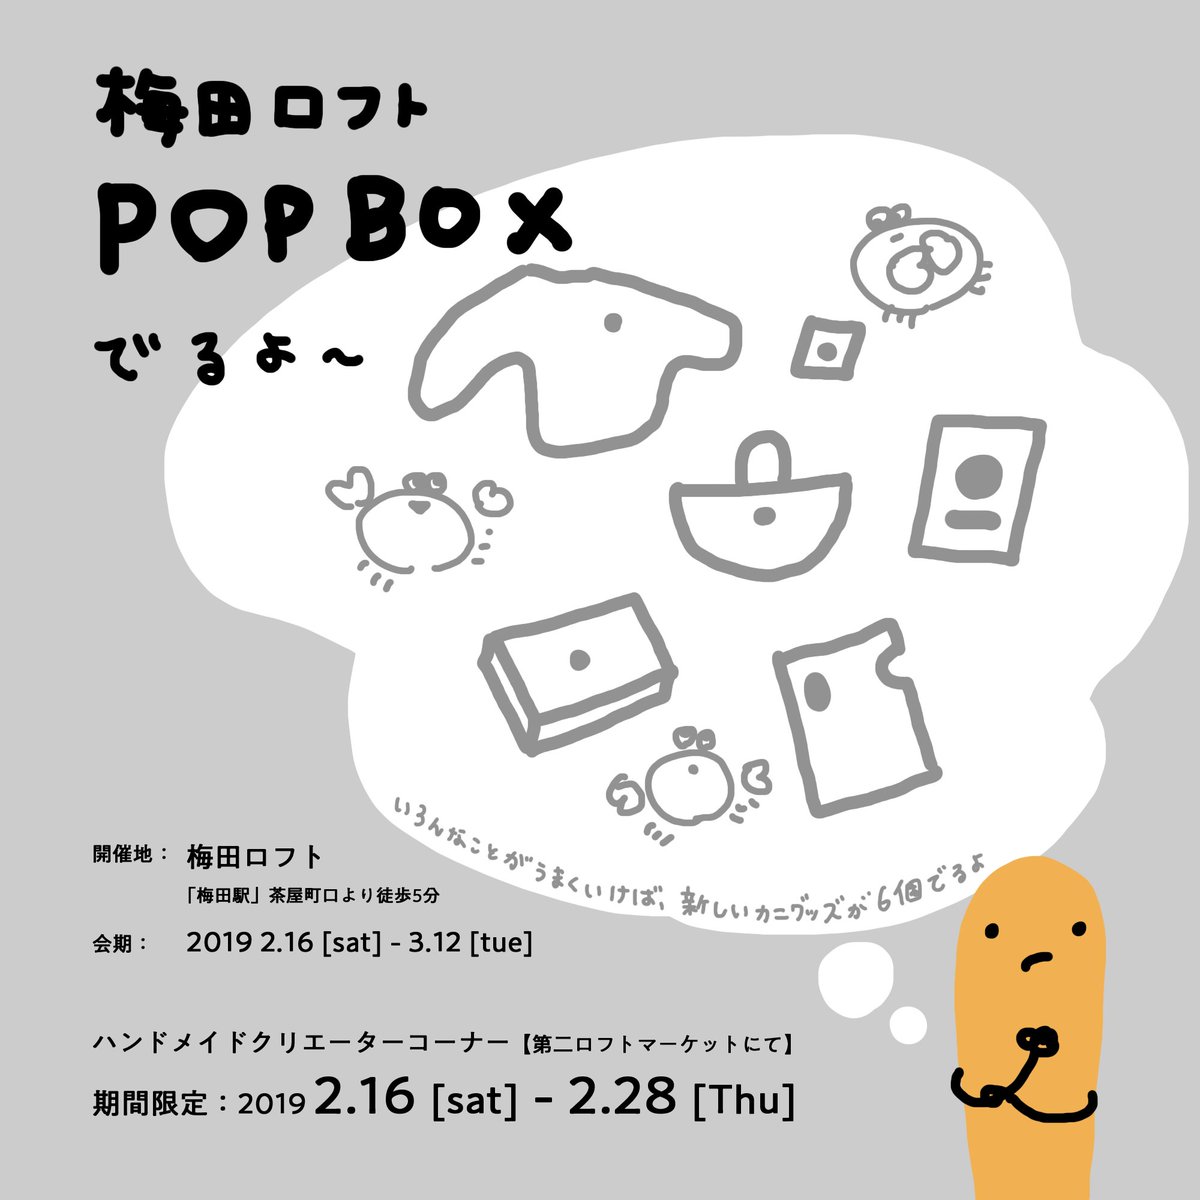 ???????
2月に大阪で開催される《梅田ロフト POPBOX》に参加します。販売するグッズの内容は会期が近くなったらお知らせさせてください〜!お近くの方どうぞよろしくお願い致します?️ 